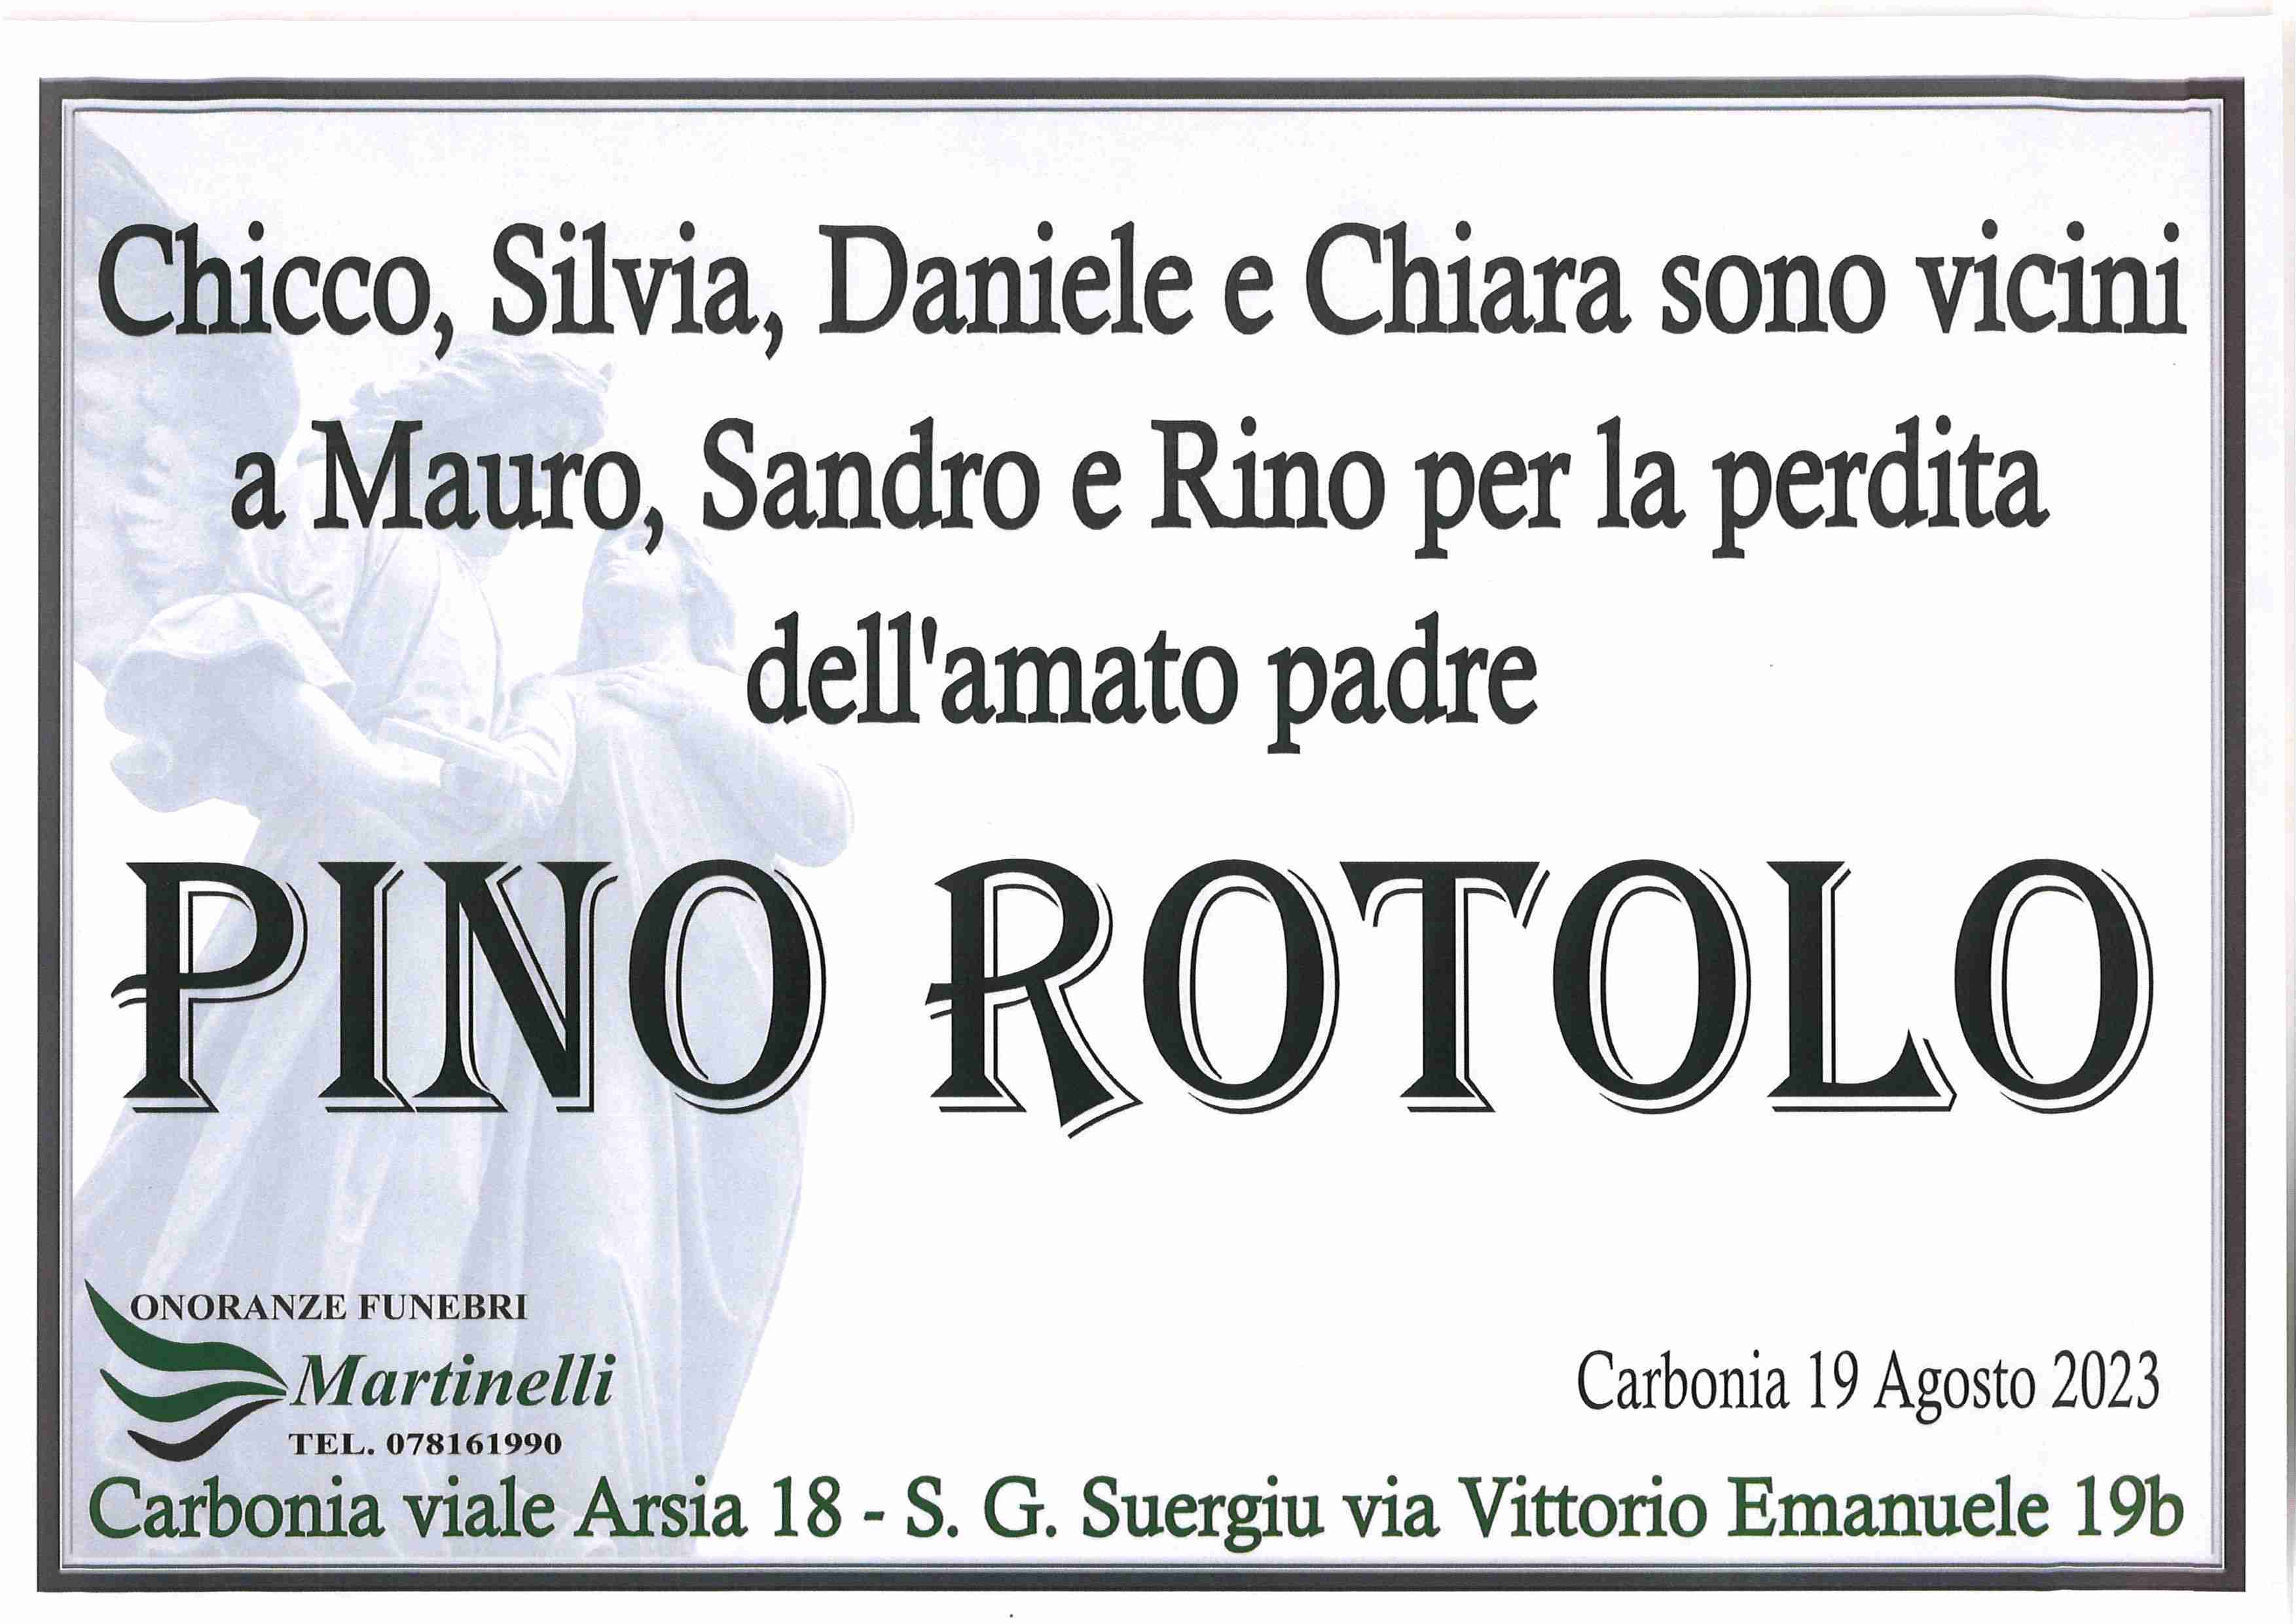 Pino Rotolo